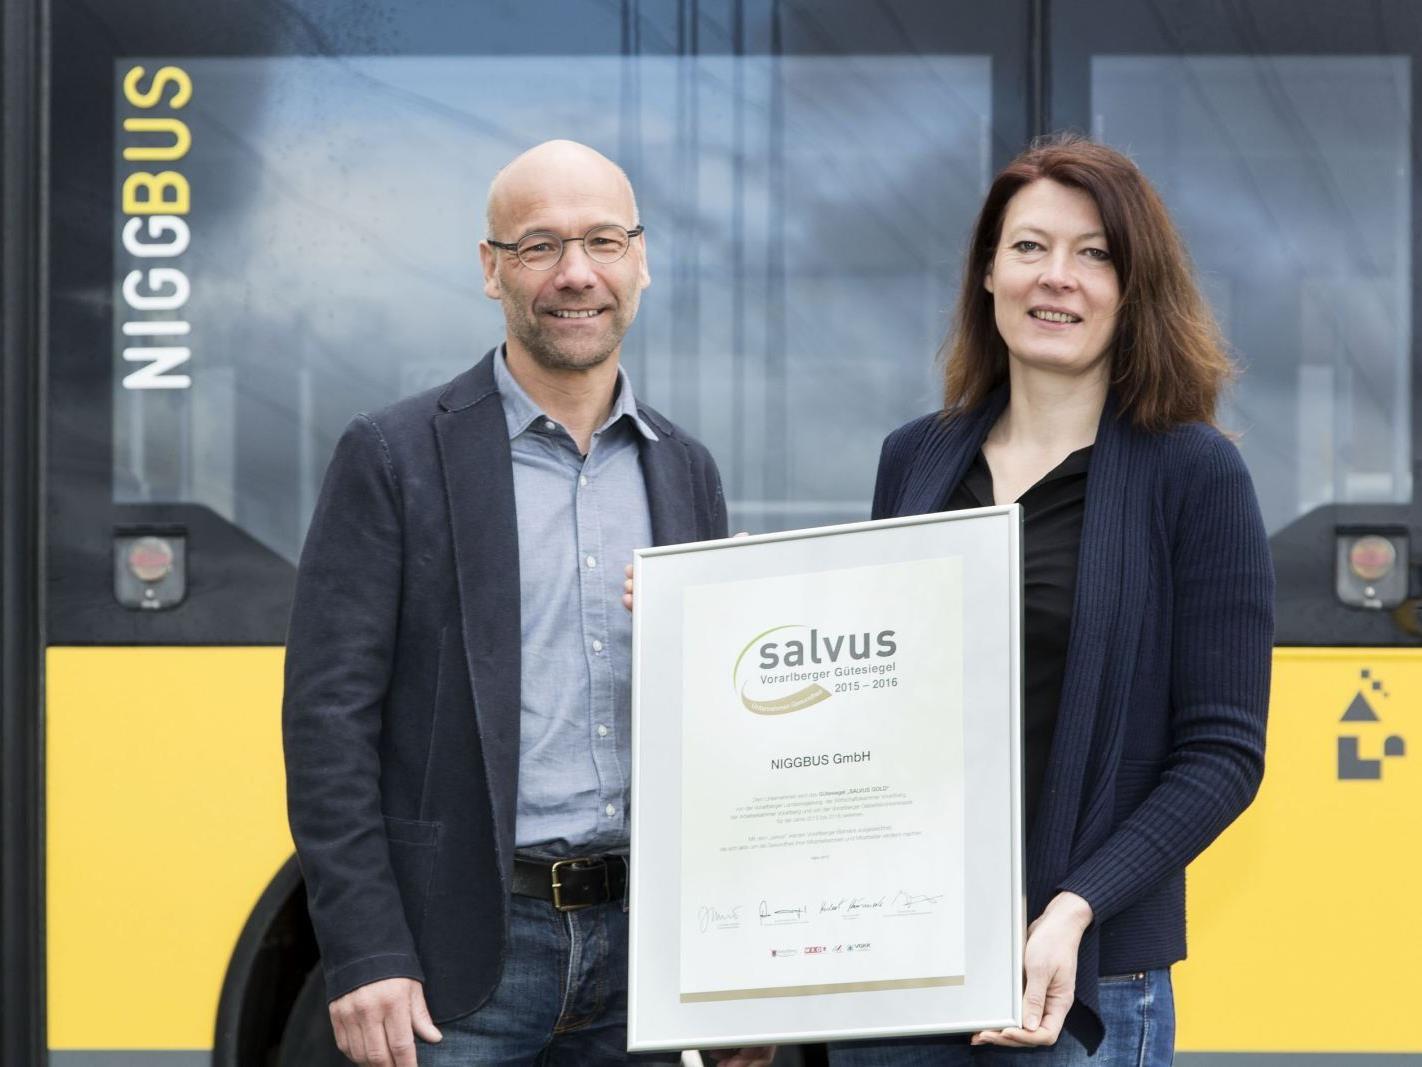 Geschäftsführer Alfred Herburger und Brigitte Gmeiner freuen sich über die Auszeichnung mit dem goldenen „Salvus“.